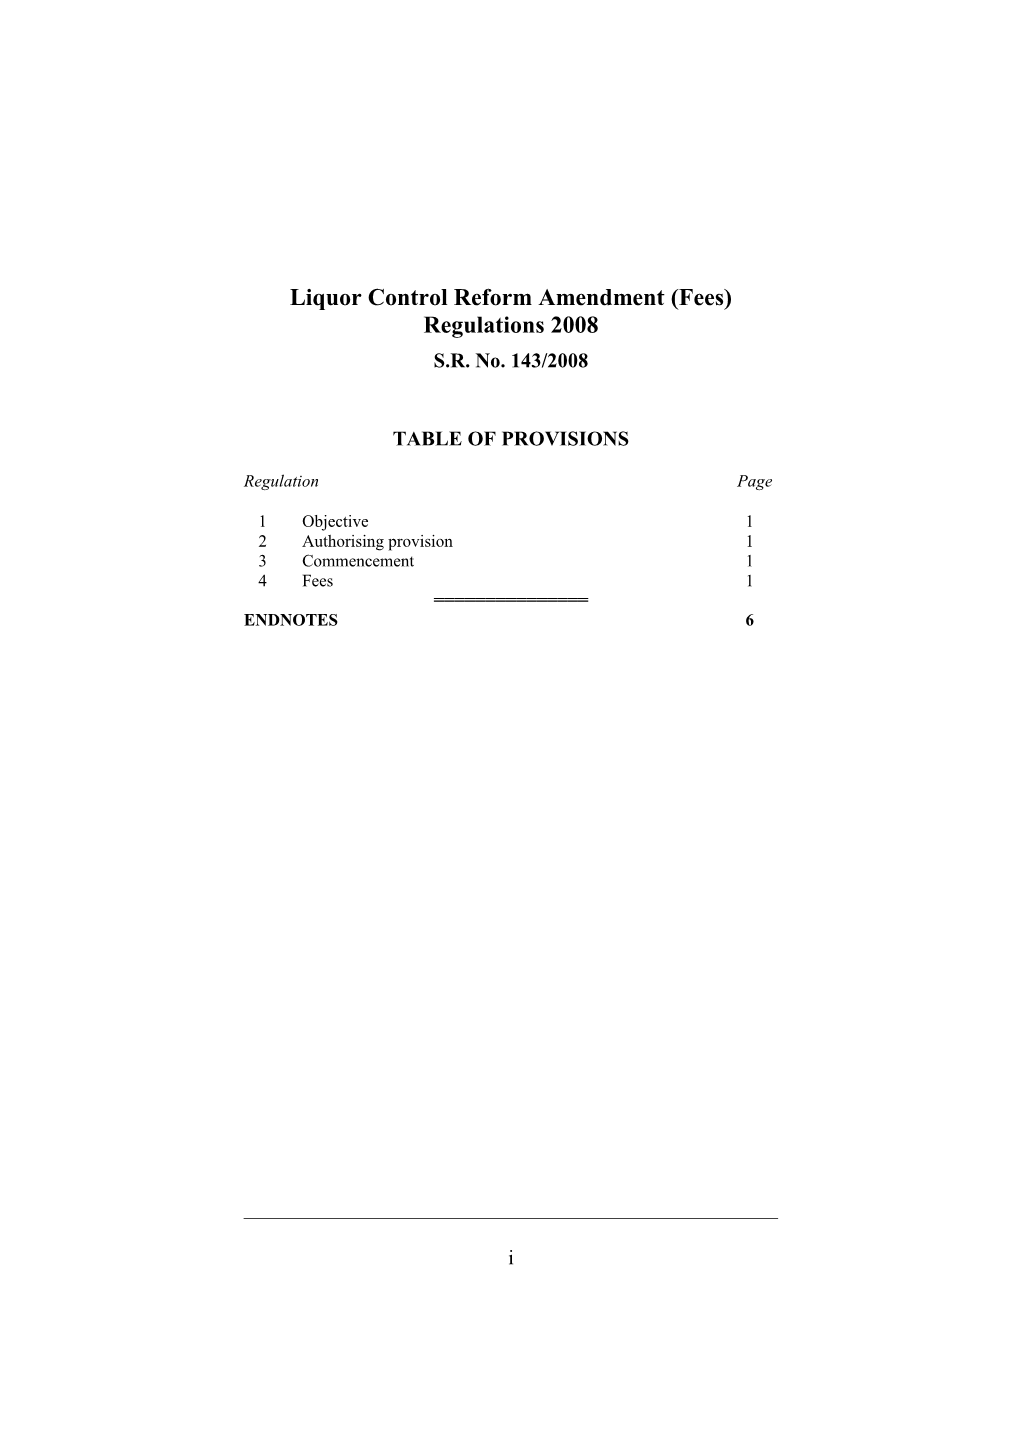 Liquor Control Reform Amendment (Fees) Regulations 2008